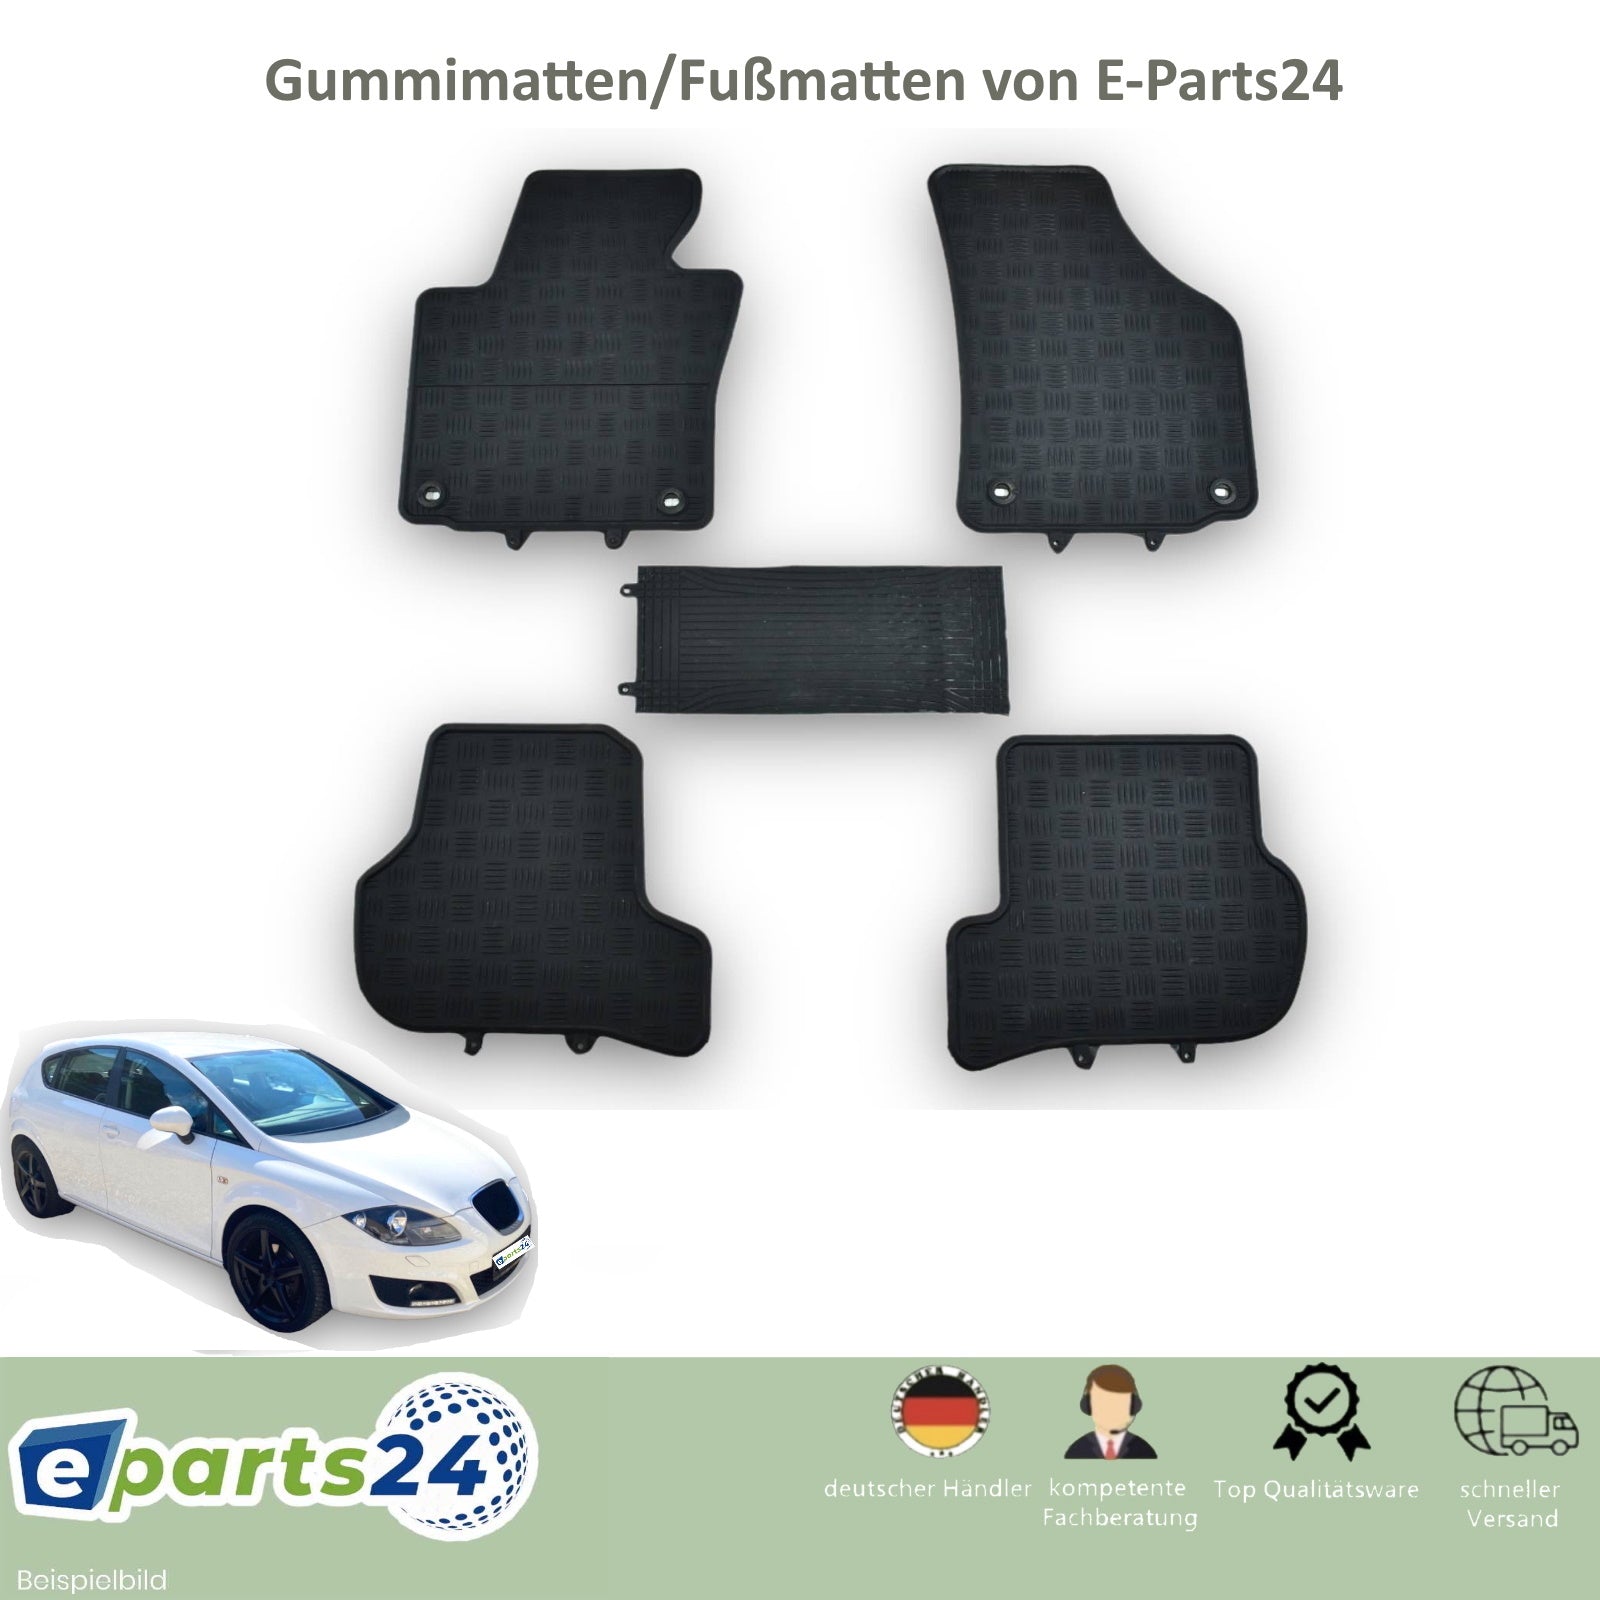 https://e-parts24.de/cdn/shop/products/seat-leon-2005-2012-vorlage.jpg?v=1663014043